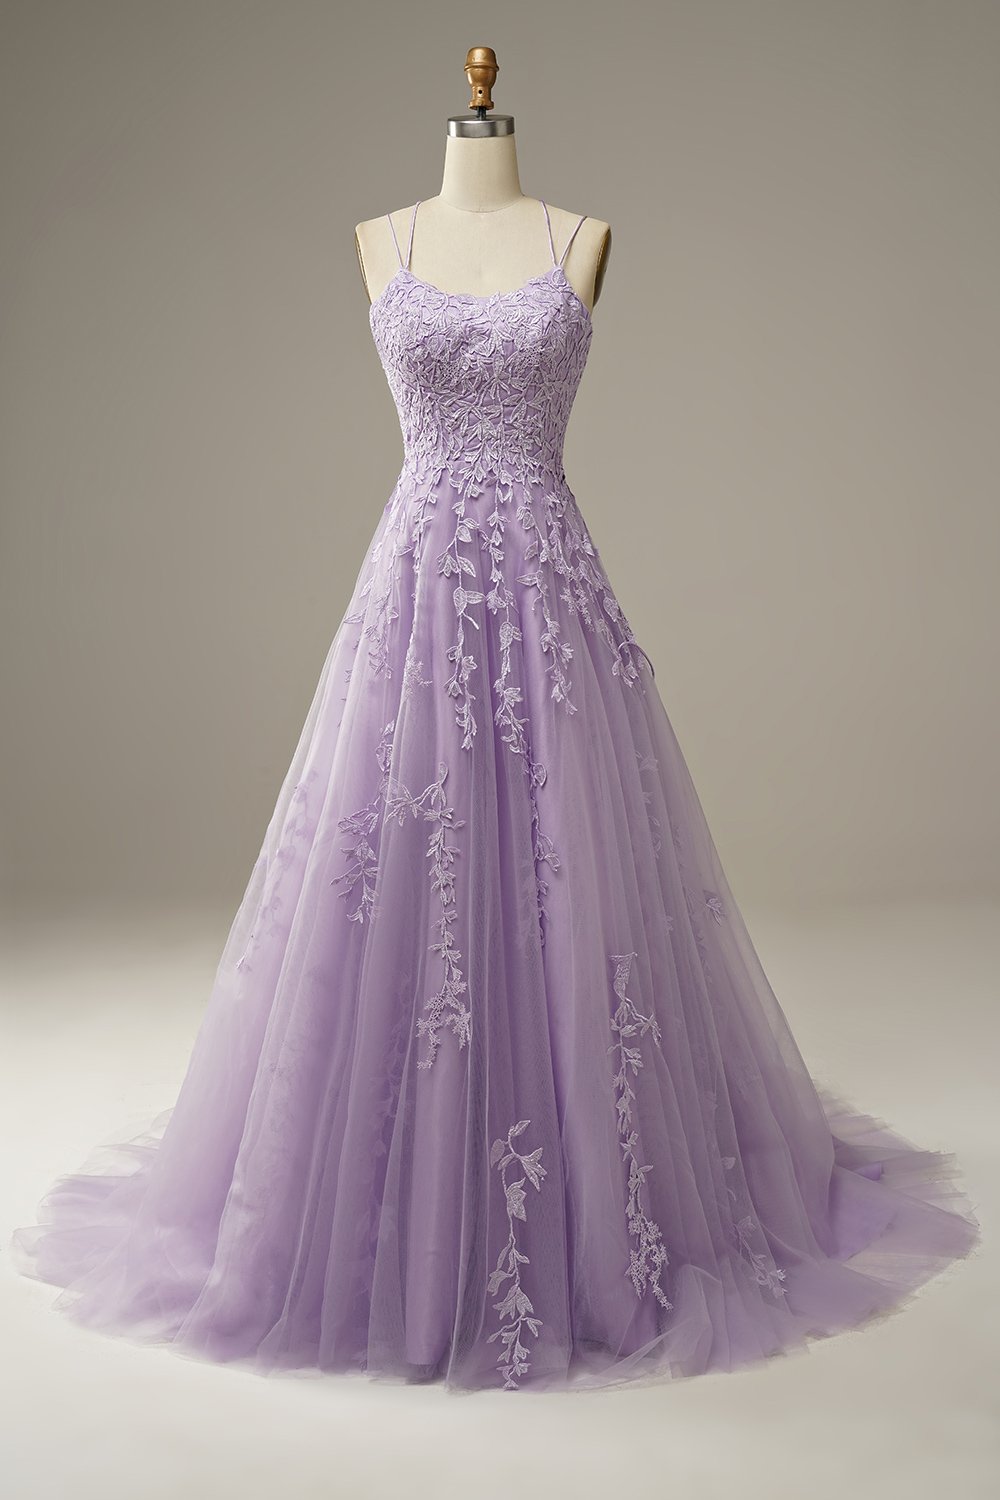 Scoop Neckline Purple Lace Prom Dresses, Lace Up Prom Dresses, Newest A-line Prom Dresses, 2021 Prom Dresses